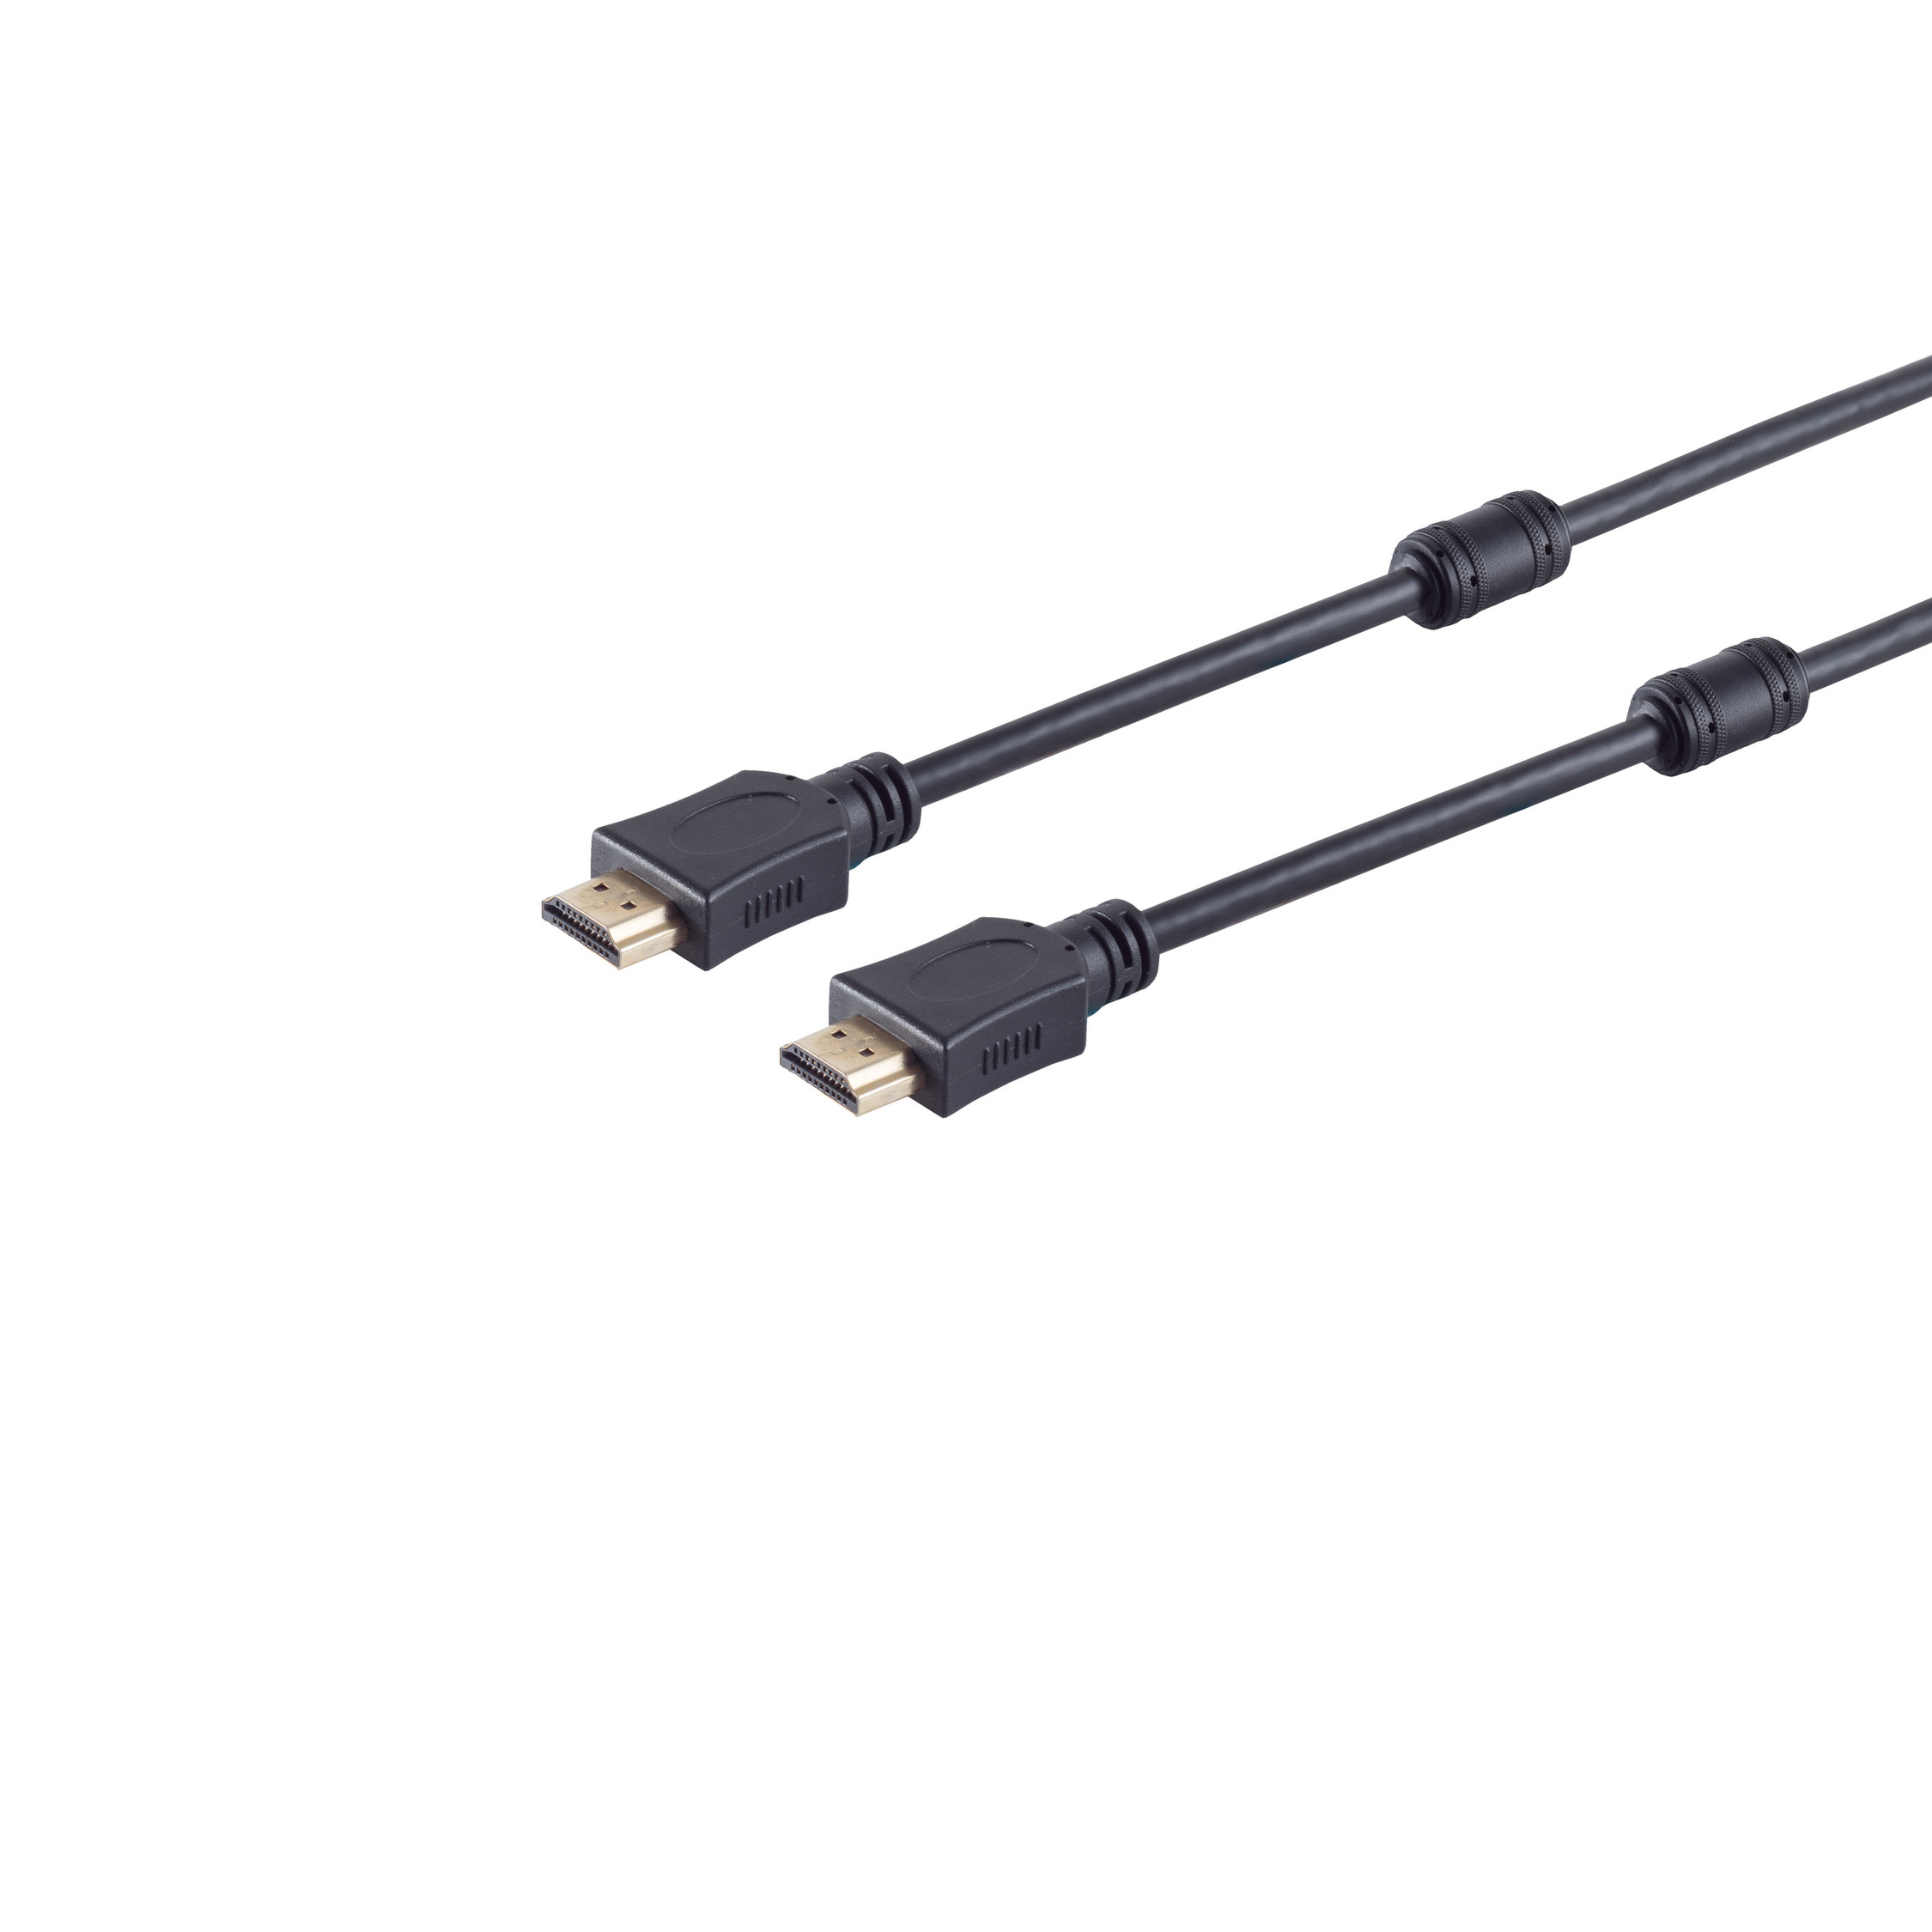 S/CONN MAXIMUM CONNECTIVITY HDMI Kabel A-St. HEAC A-St. HDMI 1,5m HDMI verg. Ferrit 